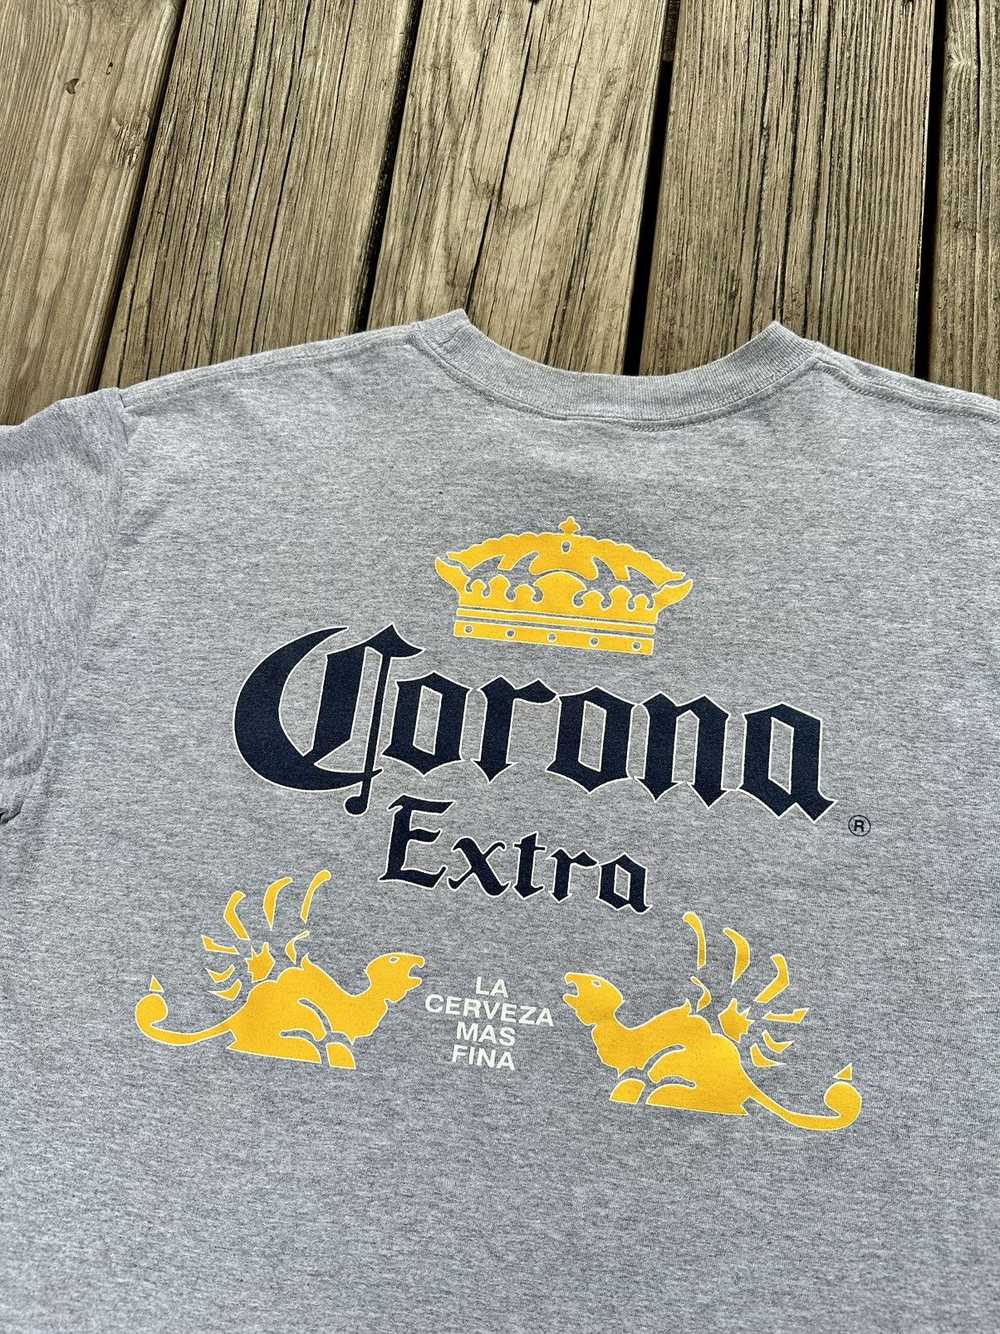 Corona Corona Extra Shirt - image 3